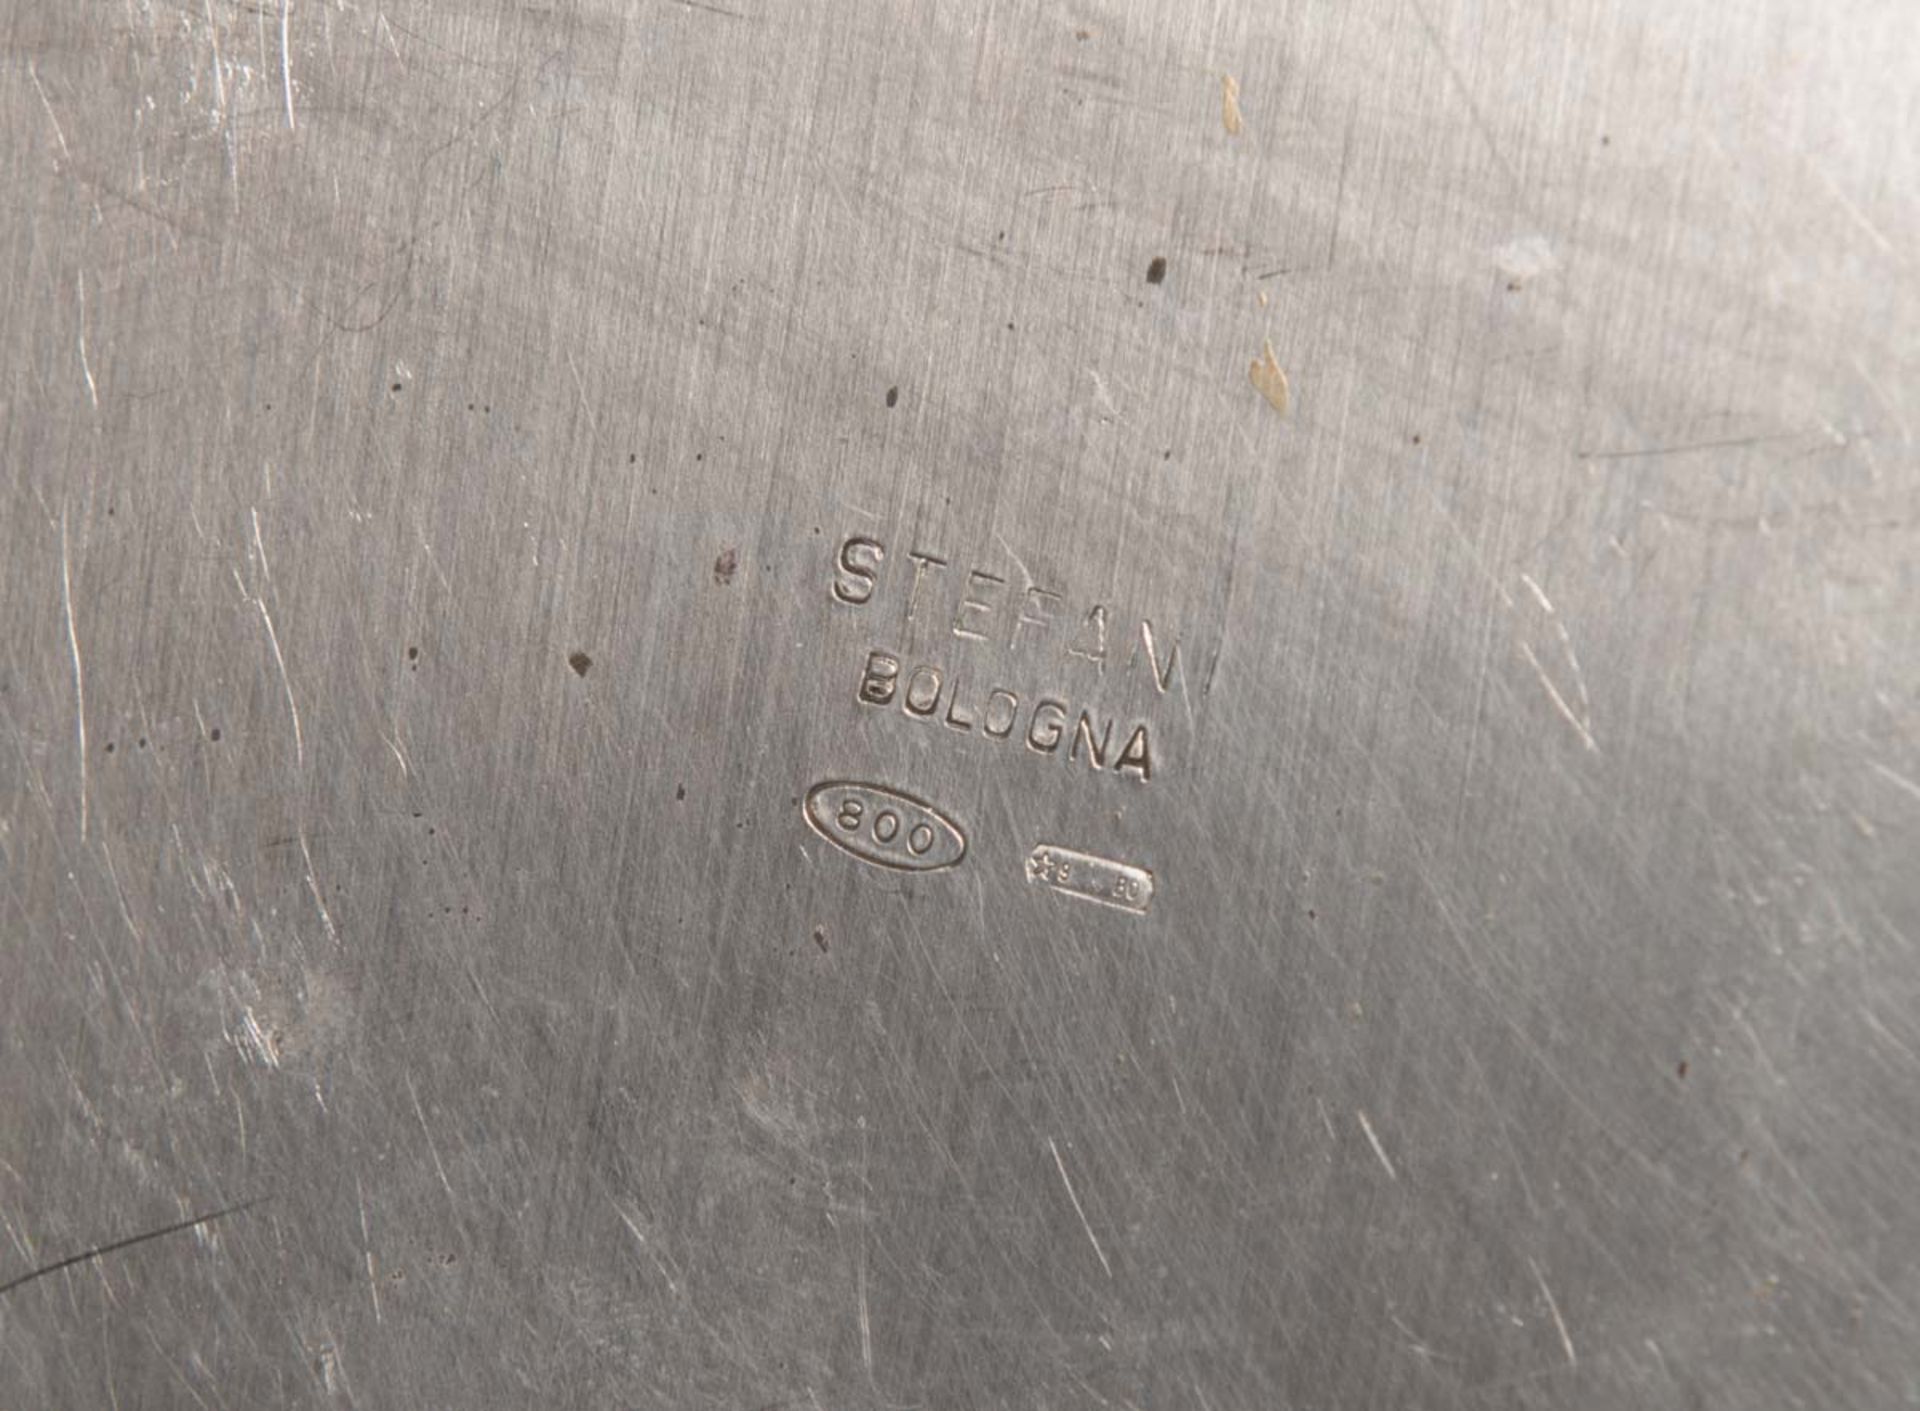 Piatto circolare in argento, Stefani - Bologna, XX sec. - Image 2 of 2